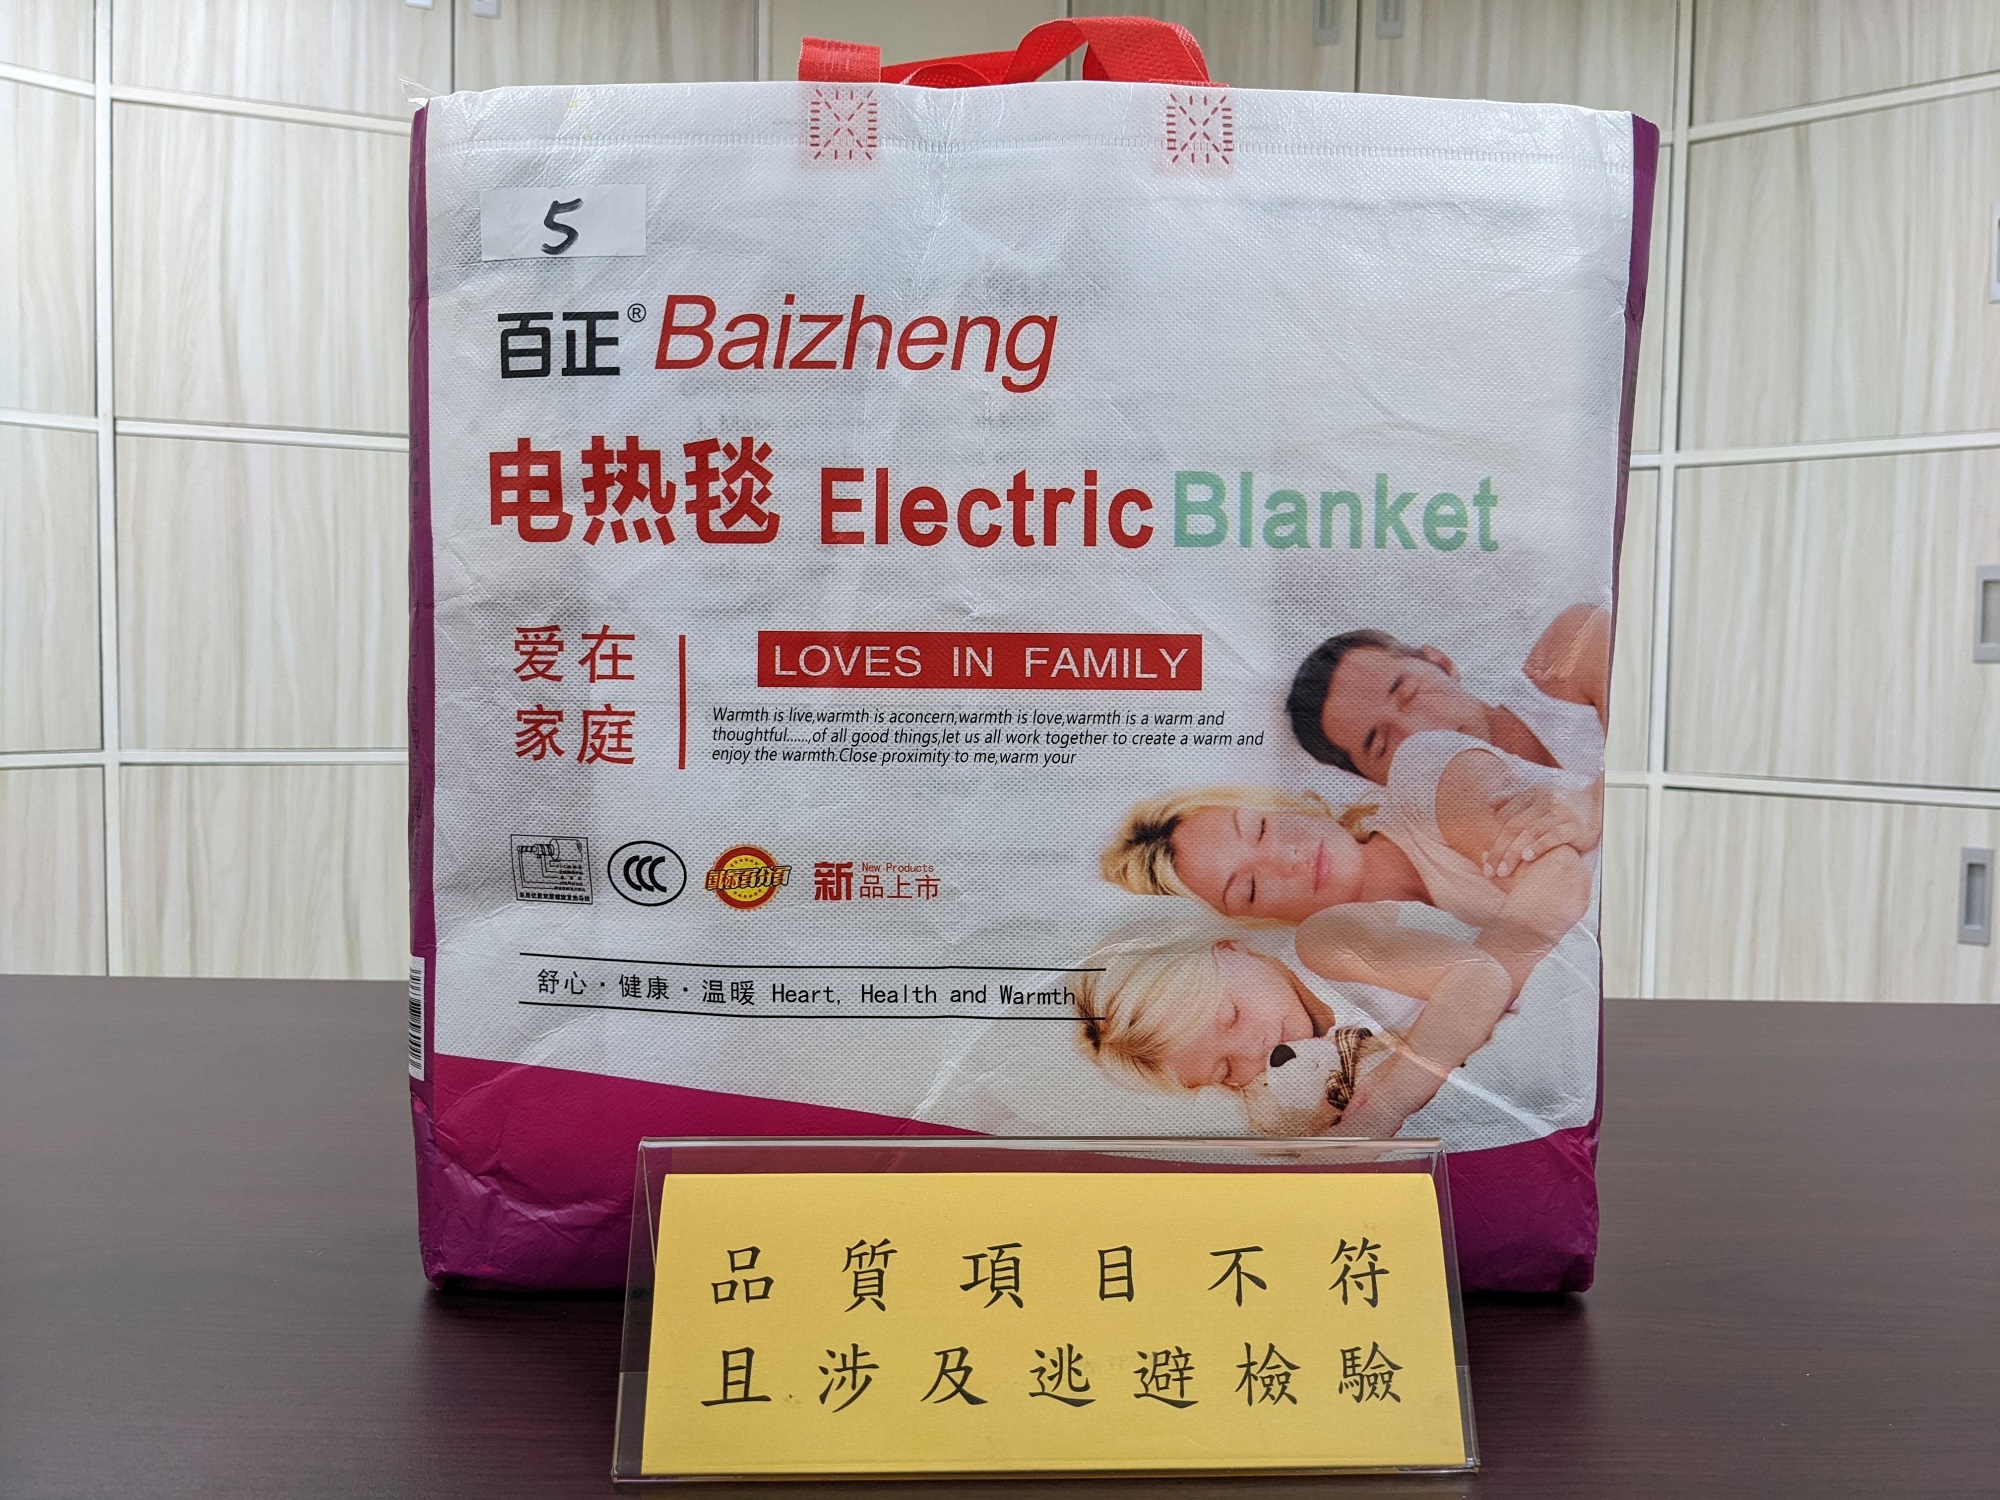 行政院消費者保護處與經濟部標準檢驗局共同公布市售「電熱毯」檢測結果